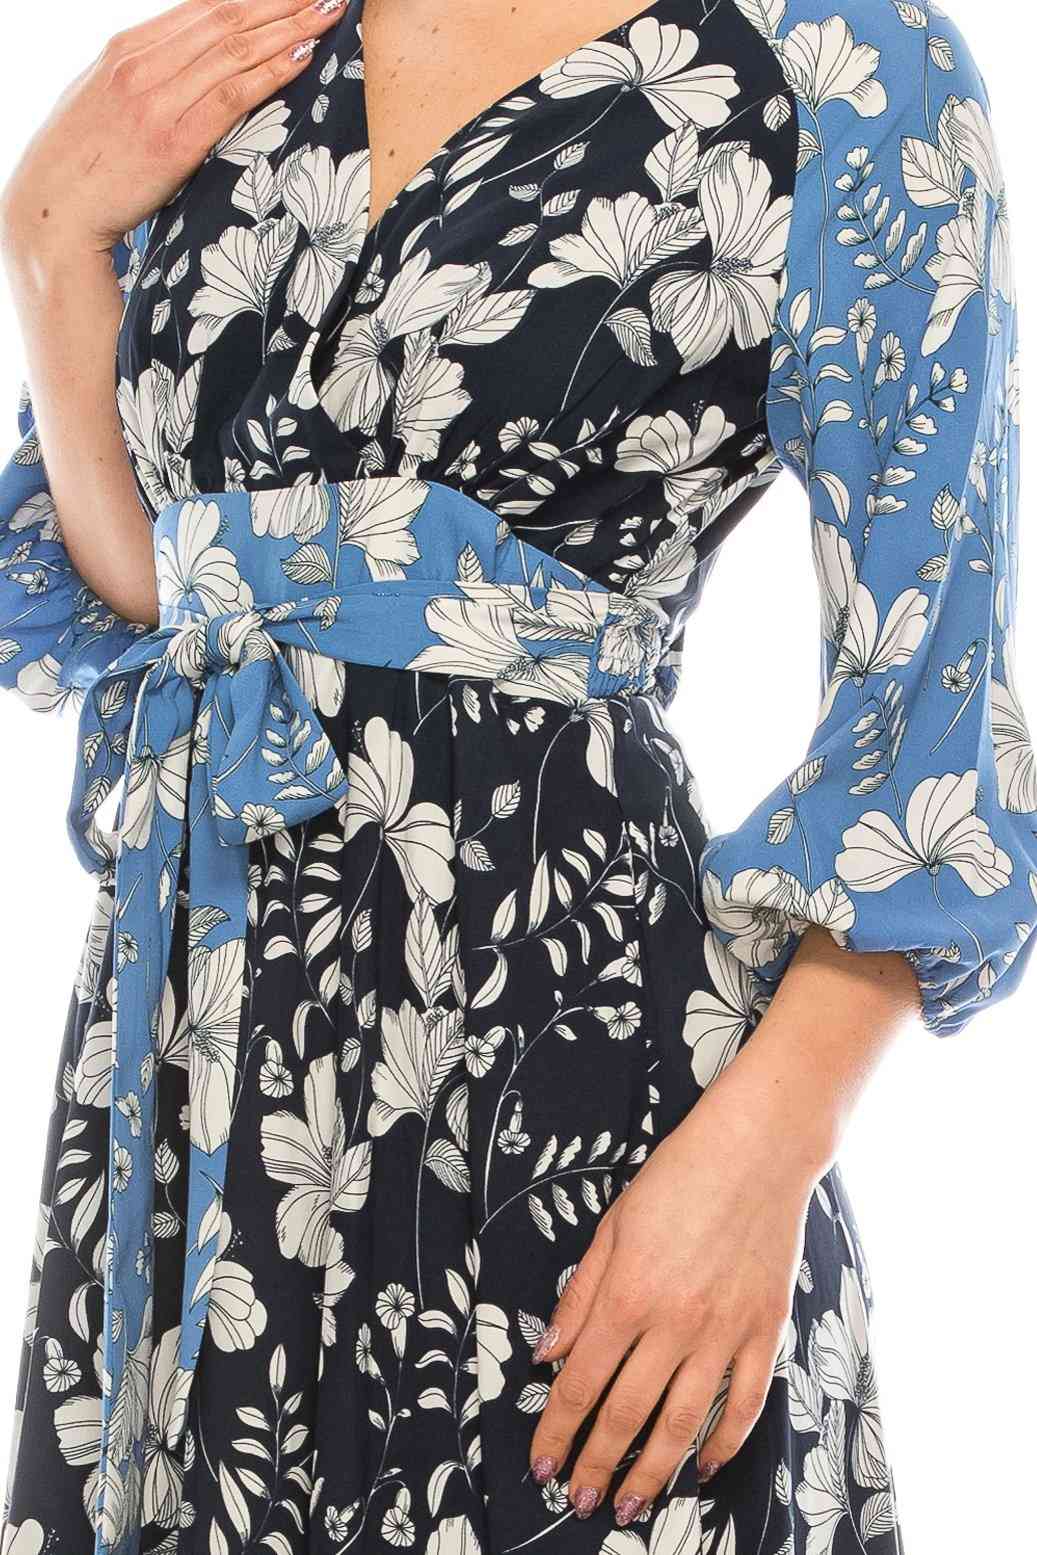 Damska dwukolorowa sukienka midi z nadrukiem w kwiaty